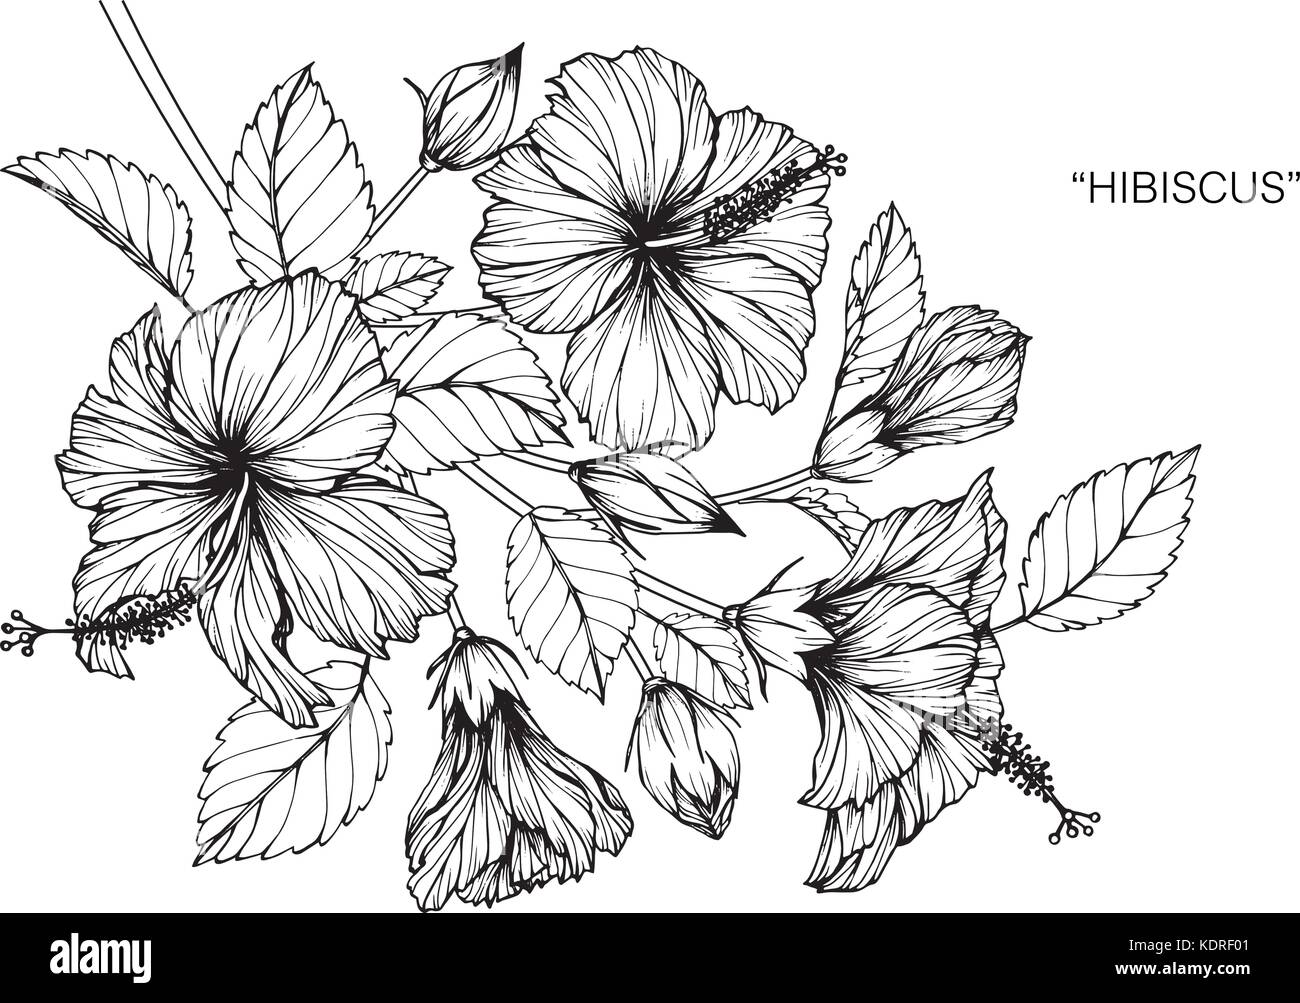 Hibiscus flower drawing immagini e fotografie stock ad alta risoluzione -  Alamy